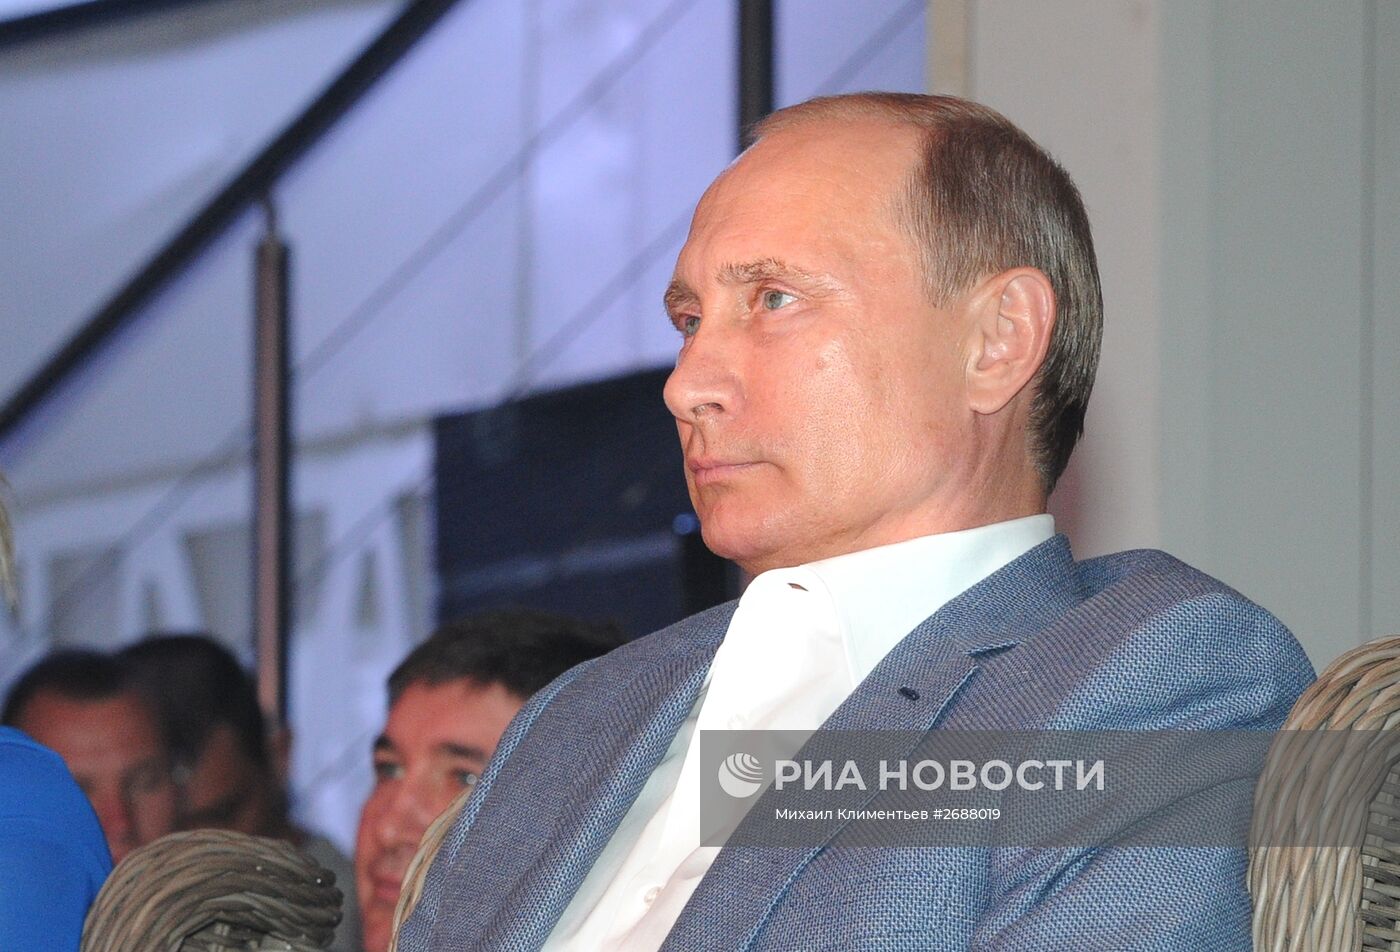 Президент РФ В.Путин и премьер-министр РФ Д.Медведев посетили турнир по боевому самбо в Сочи